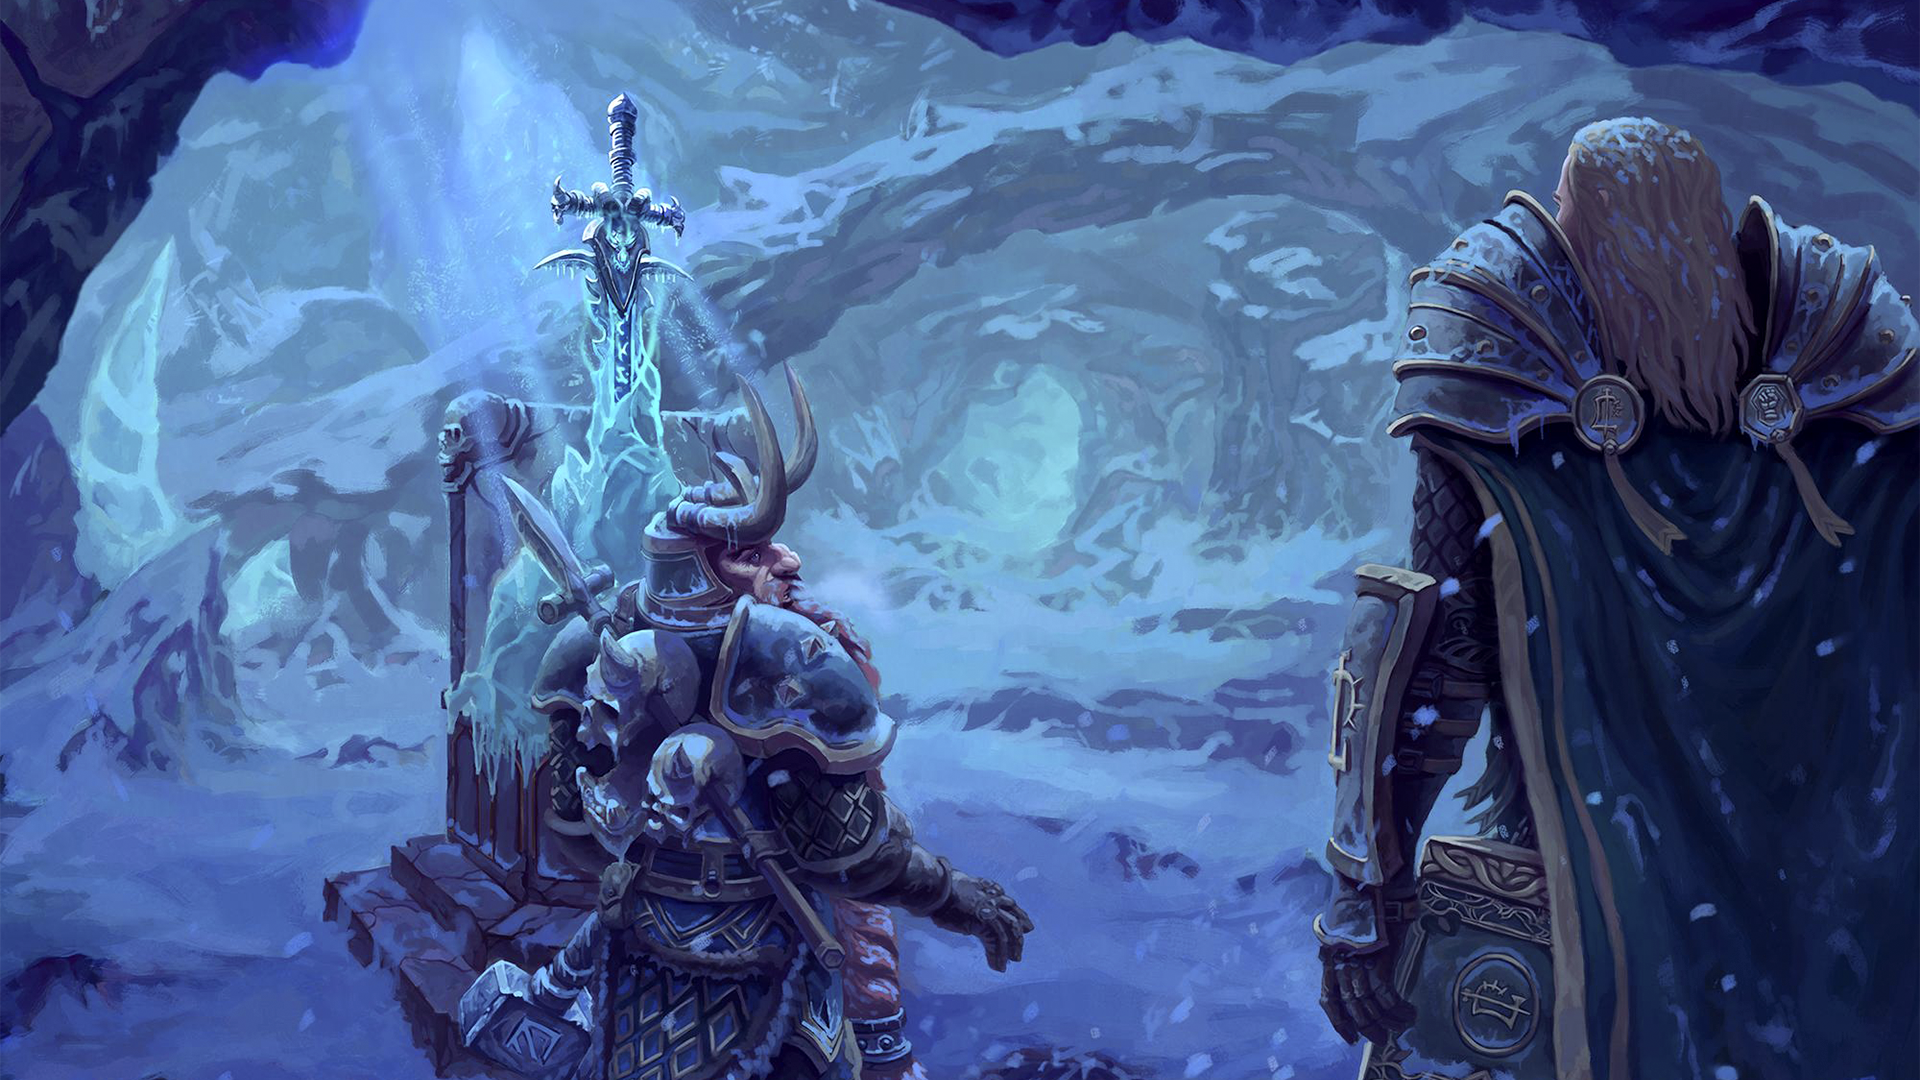 Warcraft Arthas Muradin Lich King Frostmourne World Of Warcraft Mmorpg Artwork RPG Alliance Dwarf 1920x1080